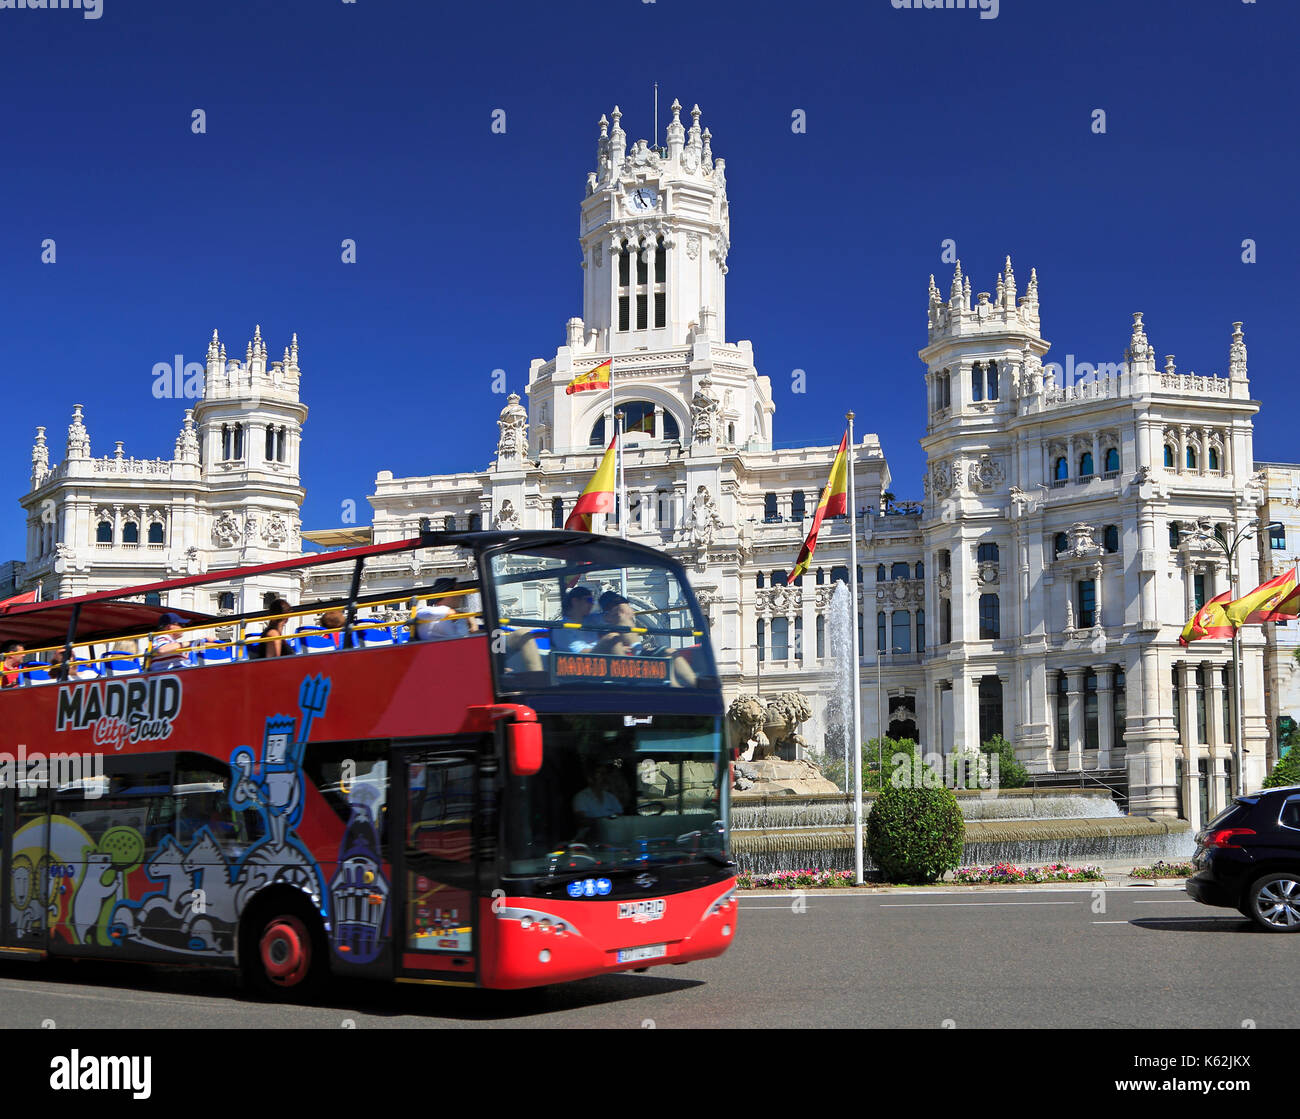 Madrid, Espagne - 26 juin 2017 : visite de la ville de Madrid un autobus qui passe en face de cybèle palace avec'appréciant les ride. Banque D'Images